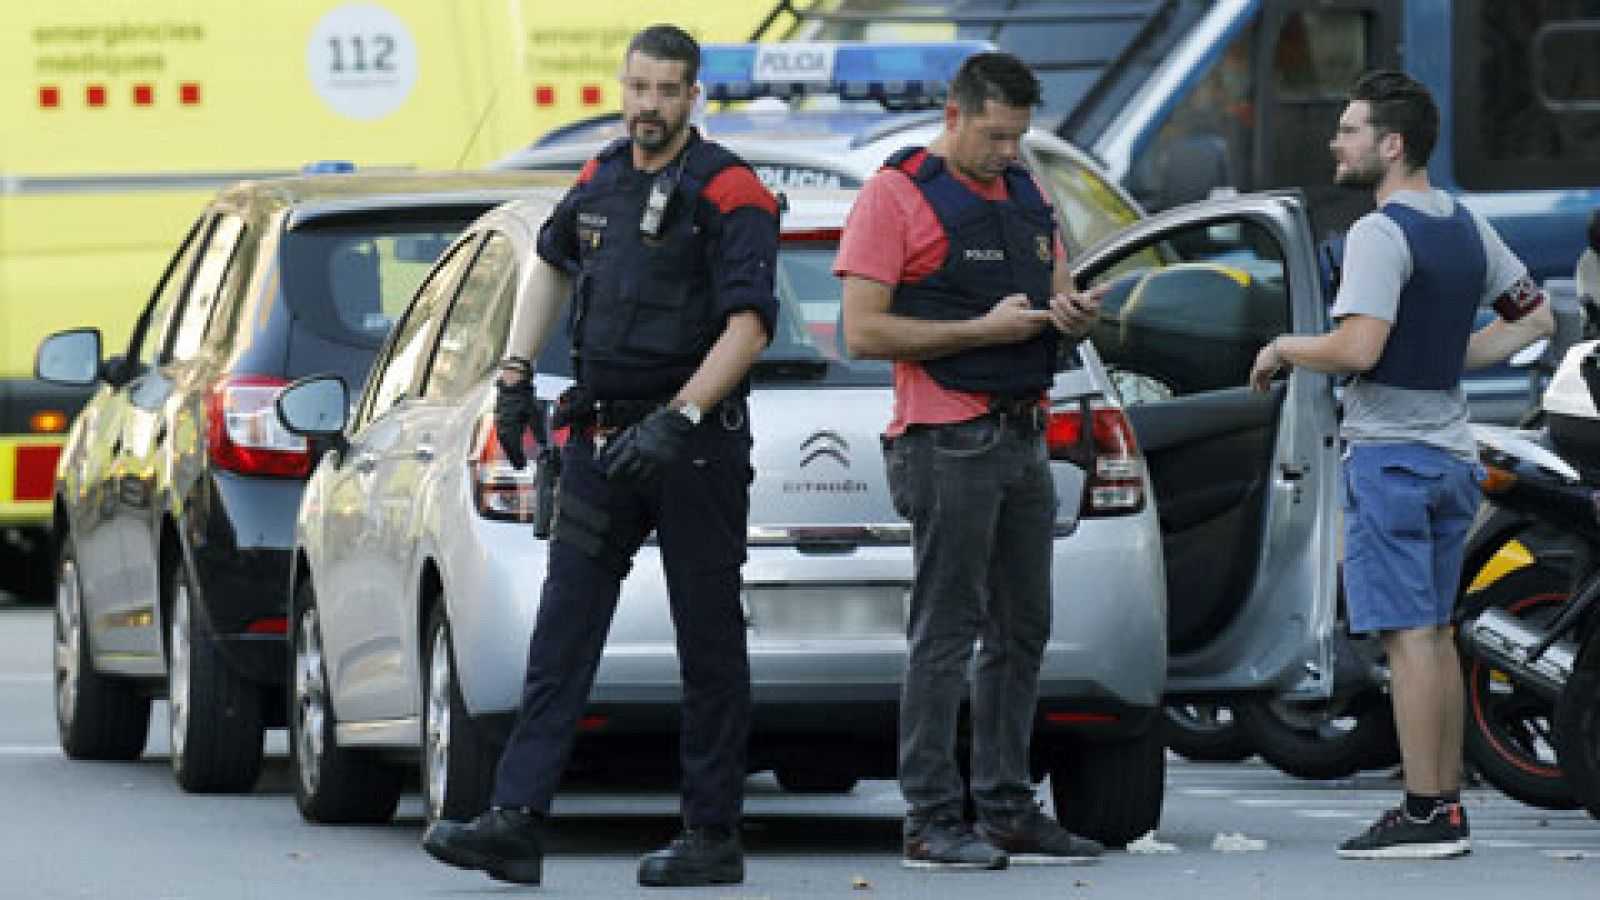 Los Mossos d'Esquadra han vinculado el atentado terrorista cometido en la Rambla de Barcelona con la explosión ocurrida la pasada madrugada en una casa de Alcanar (Tarragona), en la que una persona resultó muerta cuando, al parecer, manipulaba bombon